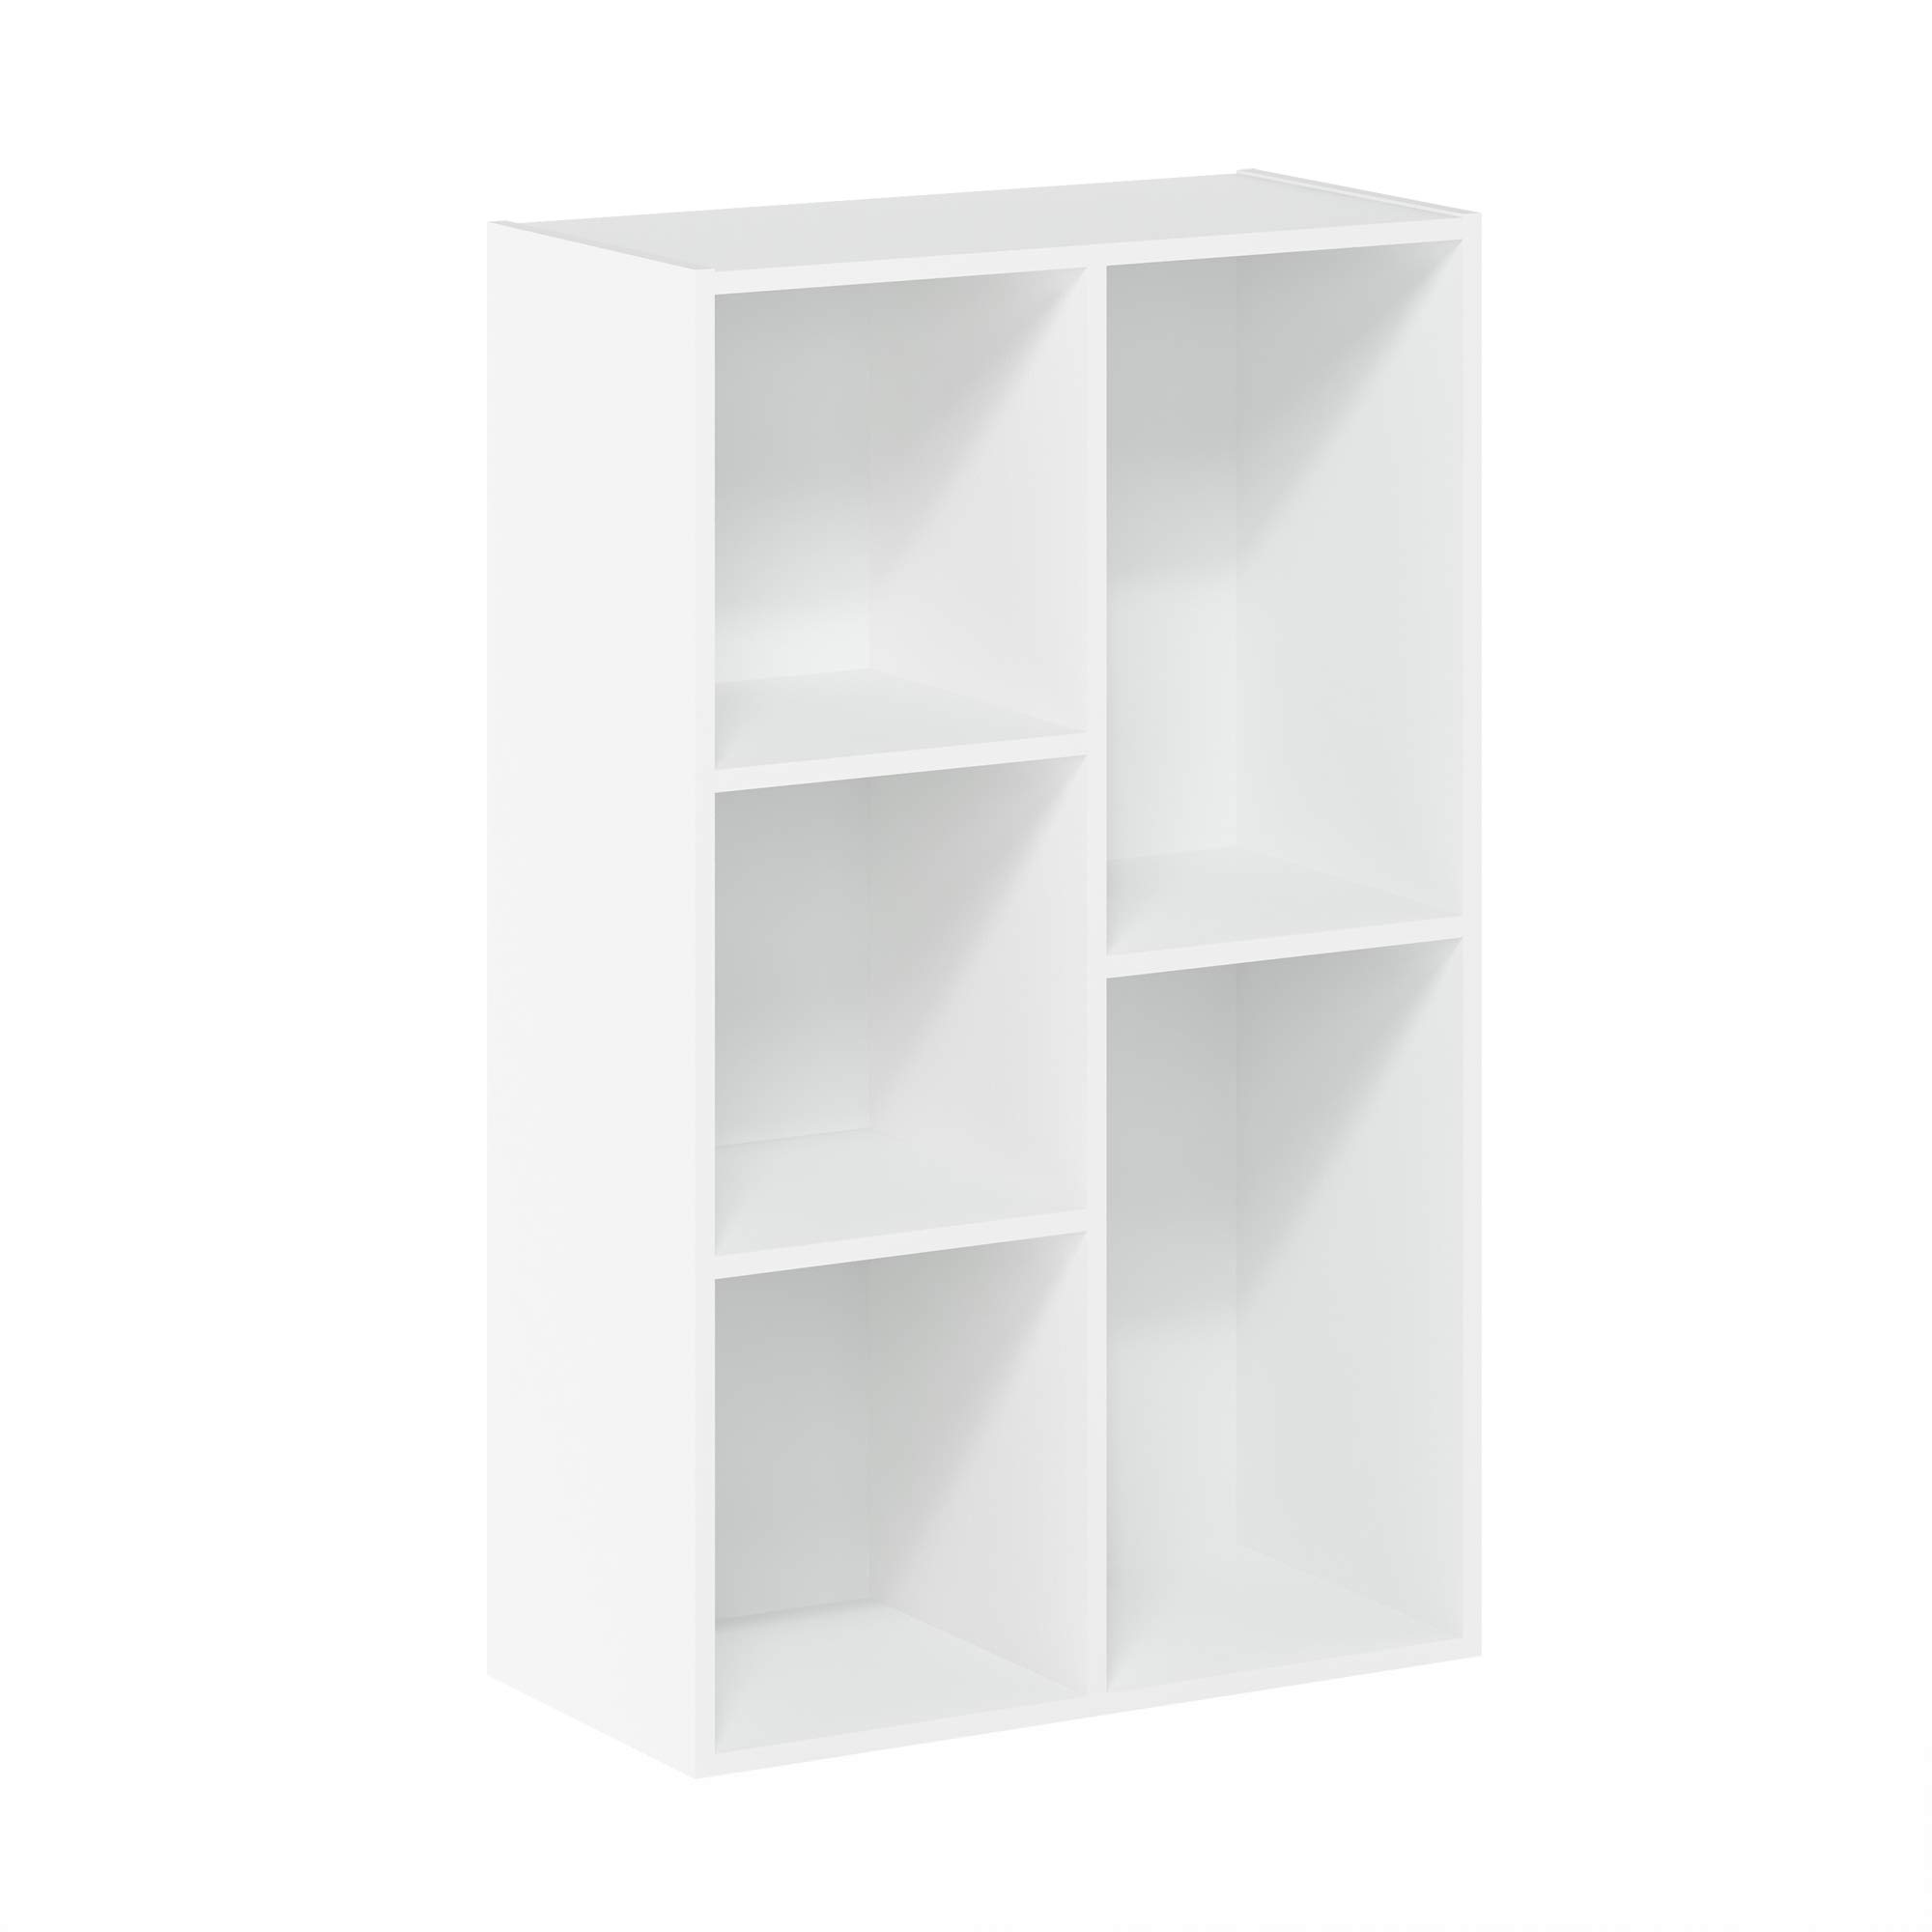 Wooden Open Shelf Bookcase Floor Standing Display Cabinet Rack 5-Cube